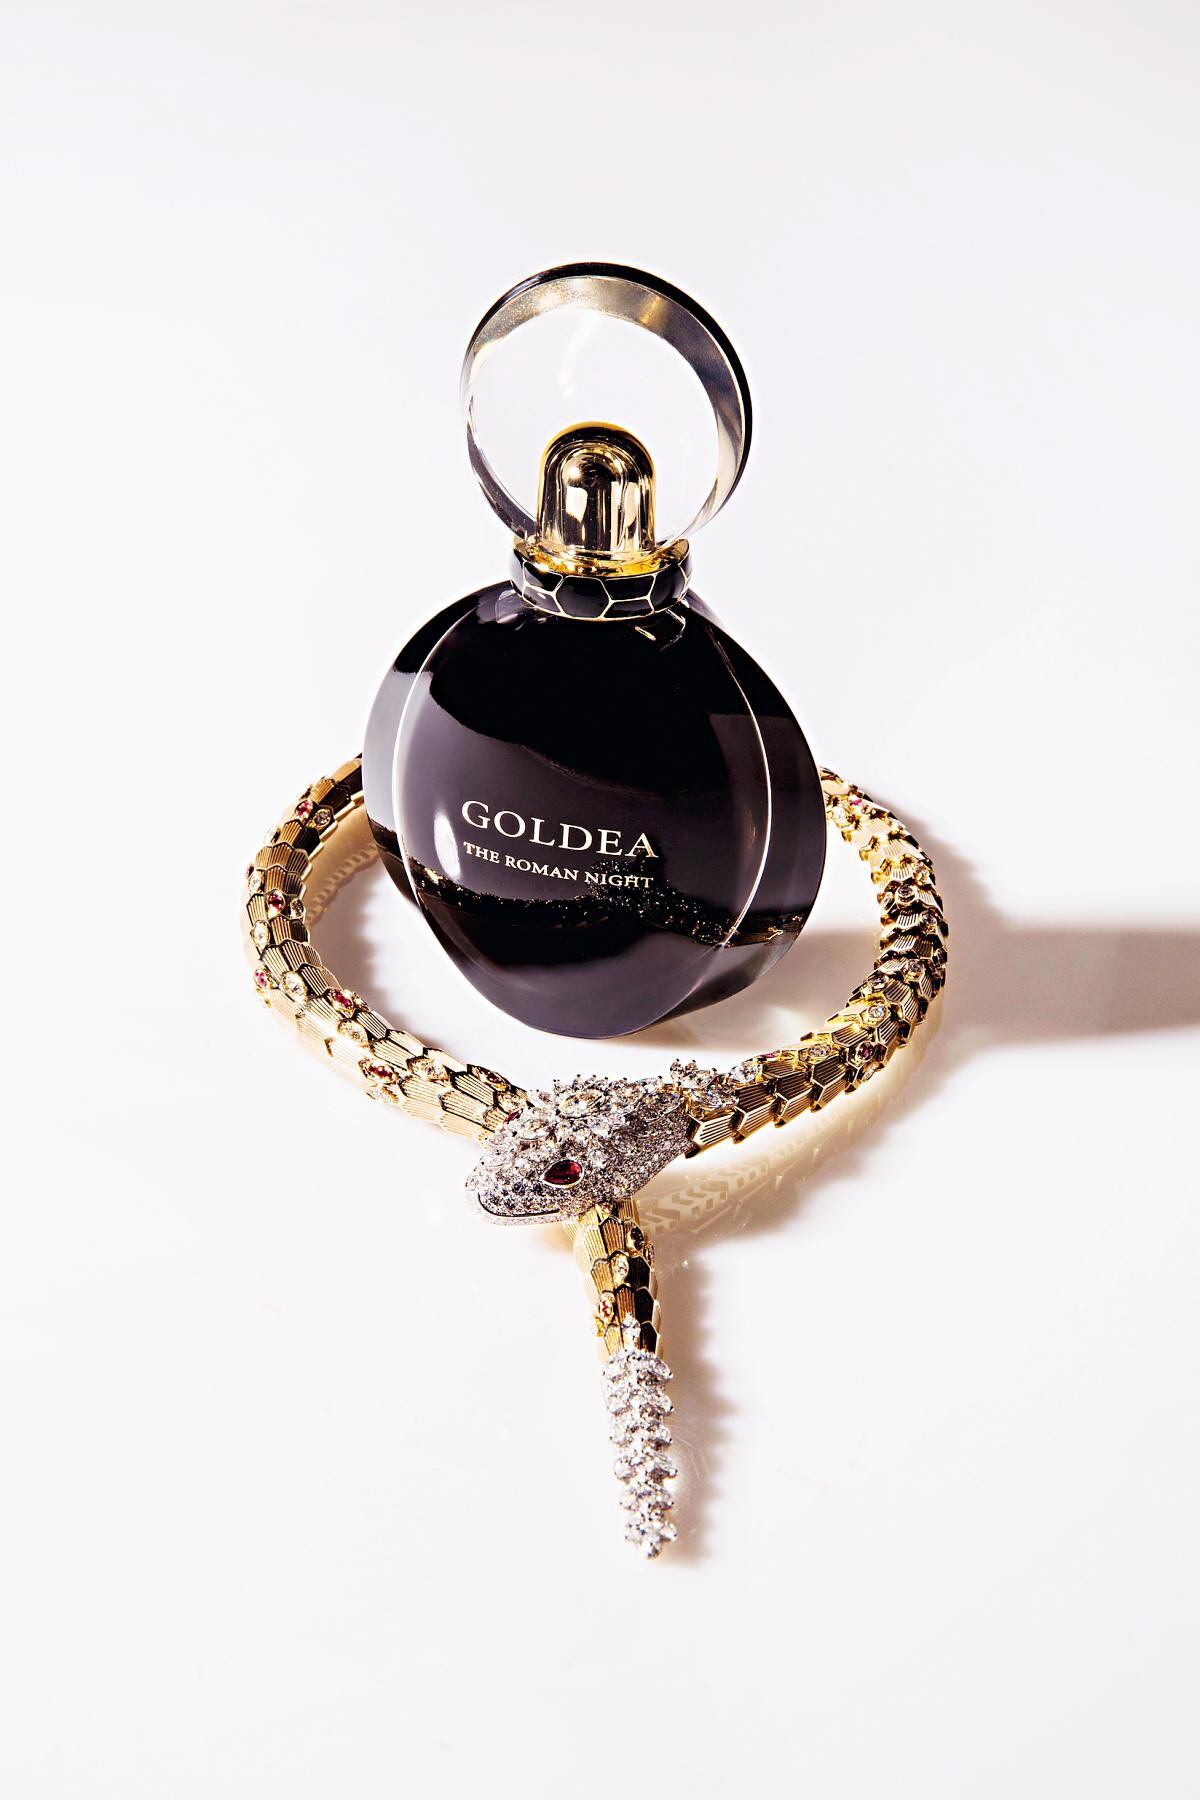 Goldea The Roman Night Eau de Parfum (108 €, 75 ml).